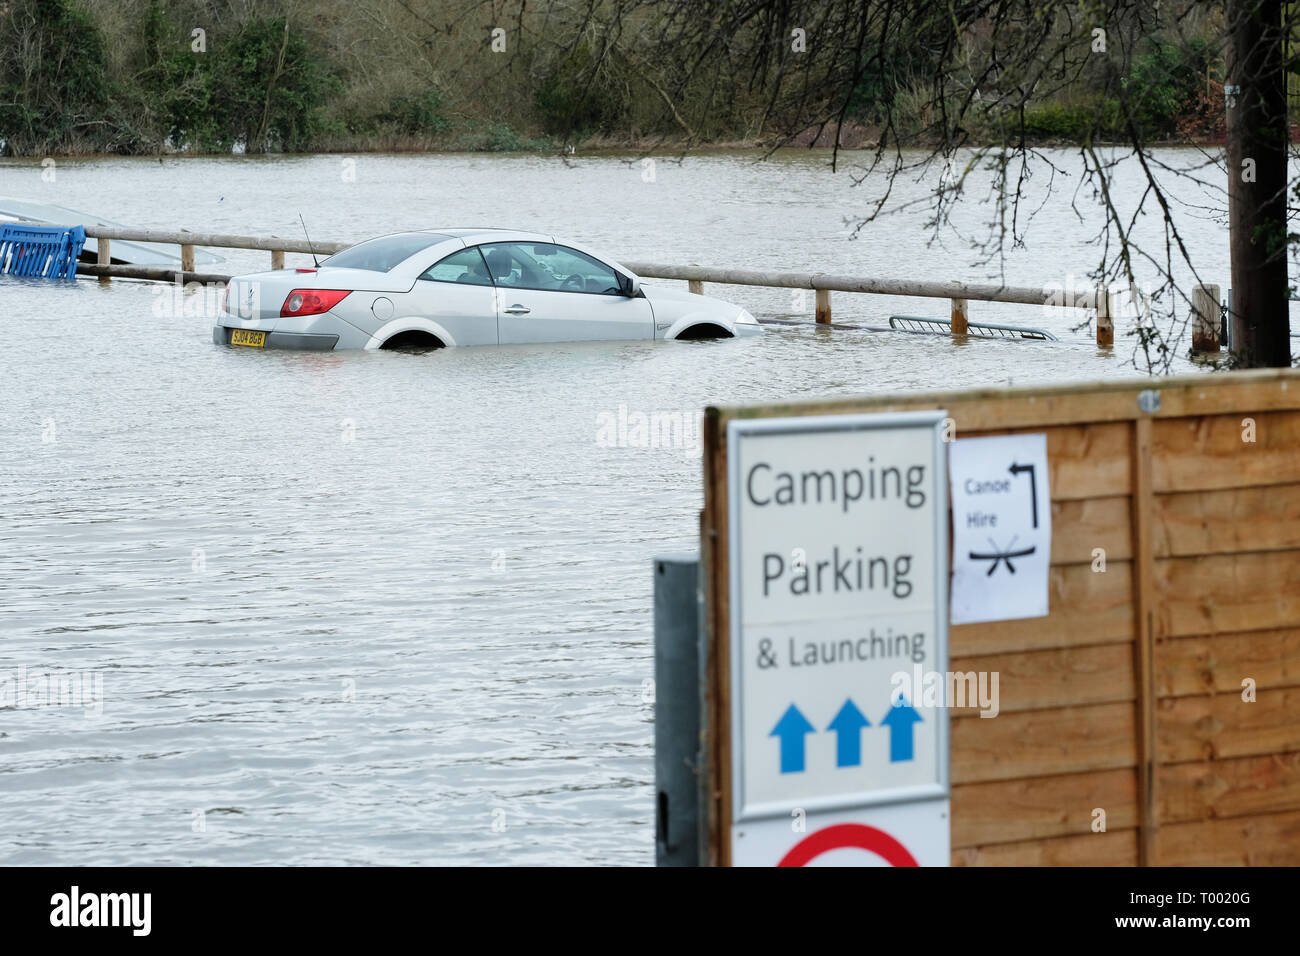 Hereford, Herefordshire, UK - Samedi 16 Mars 2019 - Royaume-Uni - une voiture entourée par les eaux de crue dans un parking à côté de la rivière Wye dans Hereford - l'Agence de l'Environnement dispose actuellement de 17 avertissements d'inondations et 57 d'alerte d'inondations à travers l'Angleterre avec plus de fortes pluies prévues dans le pays de Galles et l'Ouest au cours de la fin de semaine. Photo Steven Mai /Alamy Live News Banque D'Images